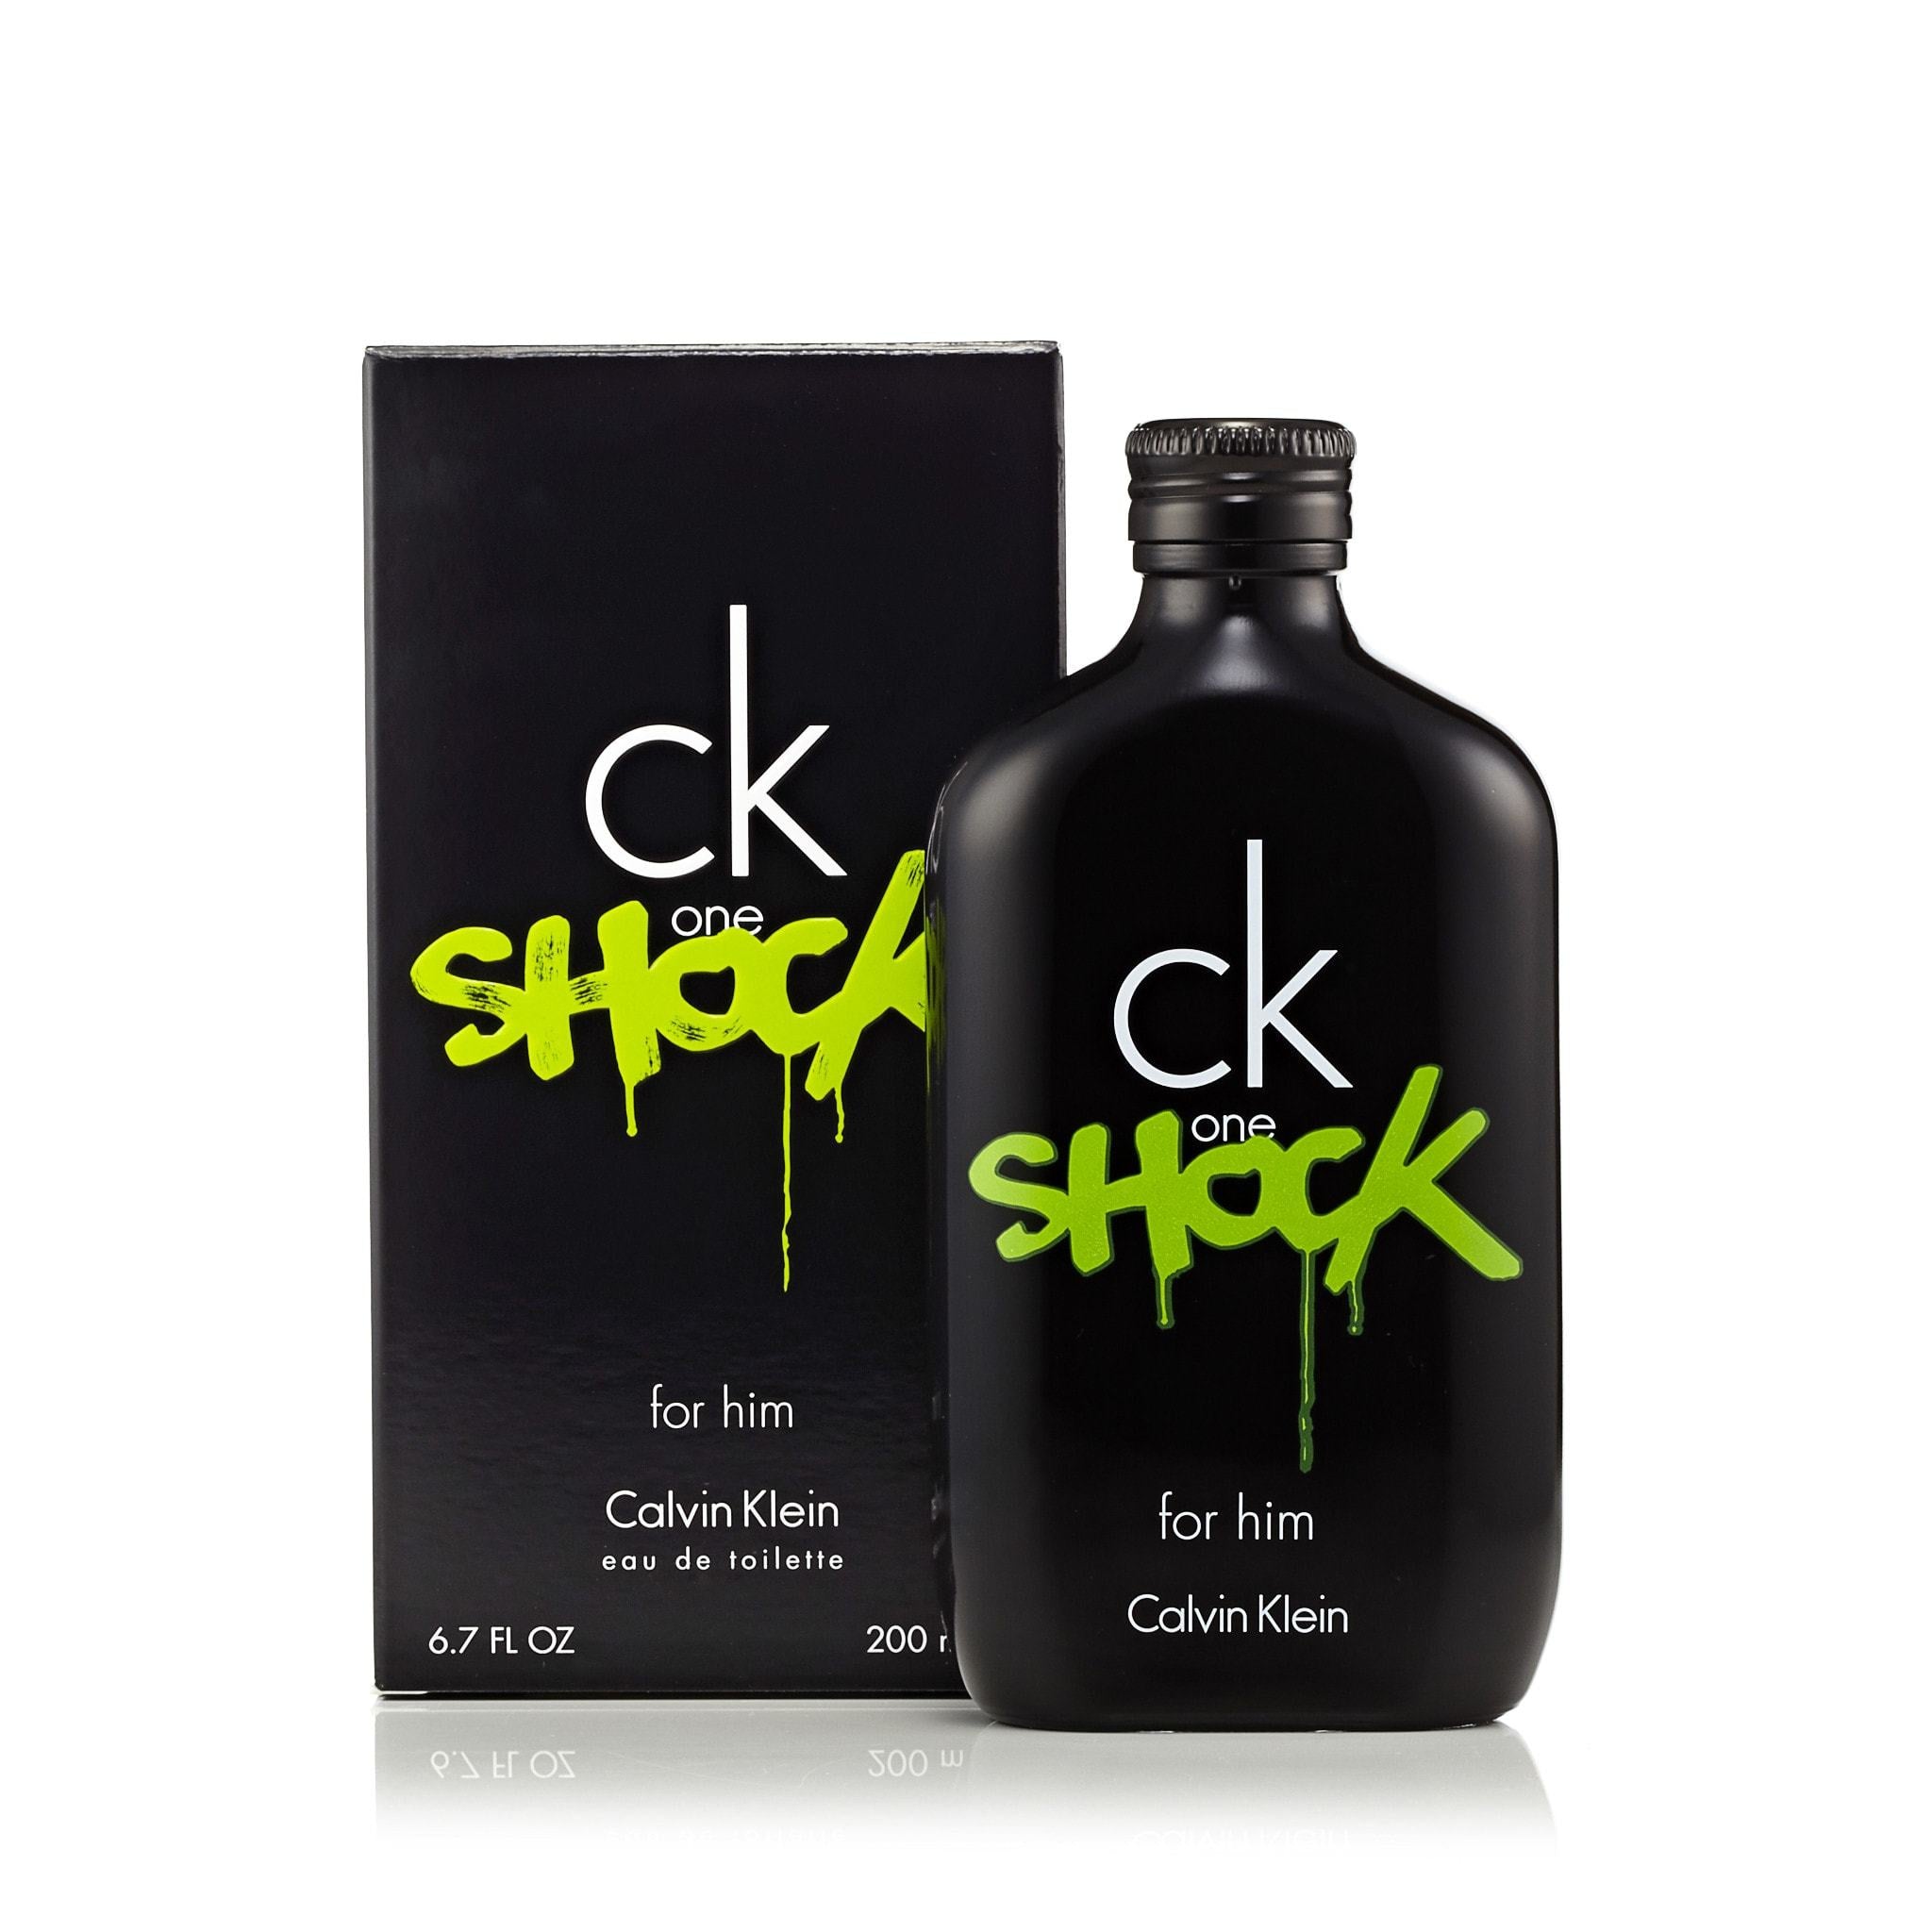 CK One Shock Men Klein Toilette – de Calvin by Spray for Eau Perfumania